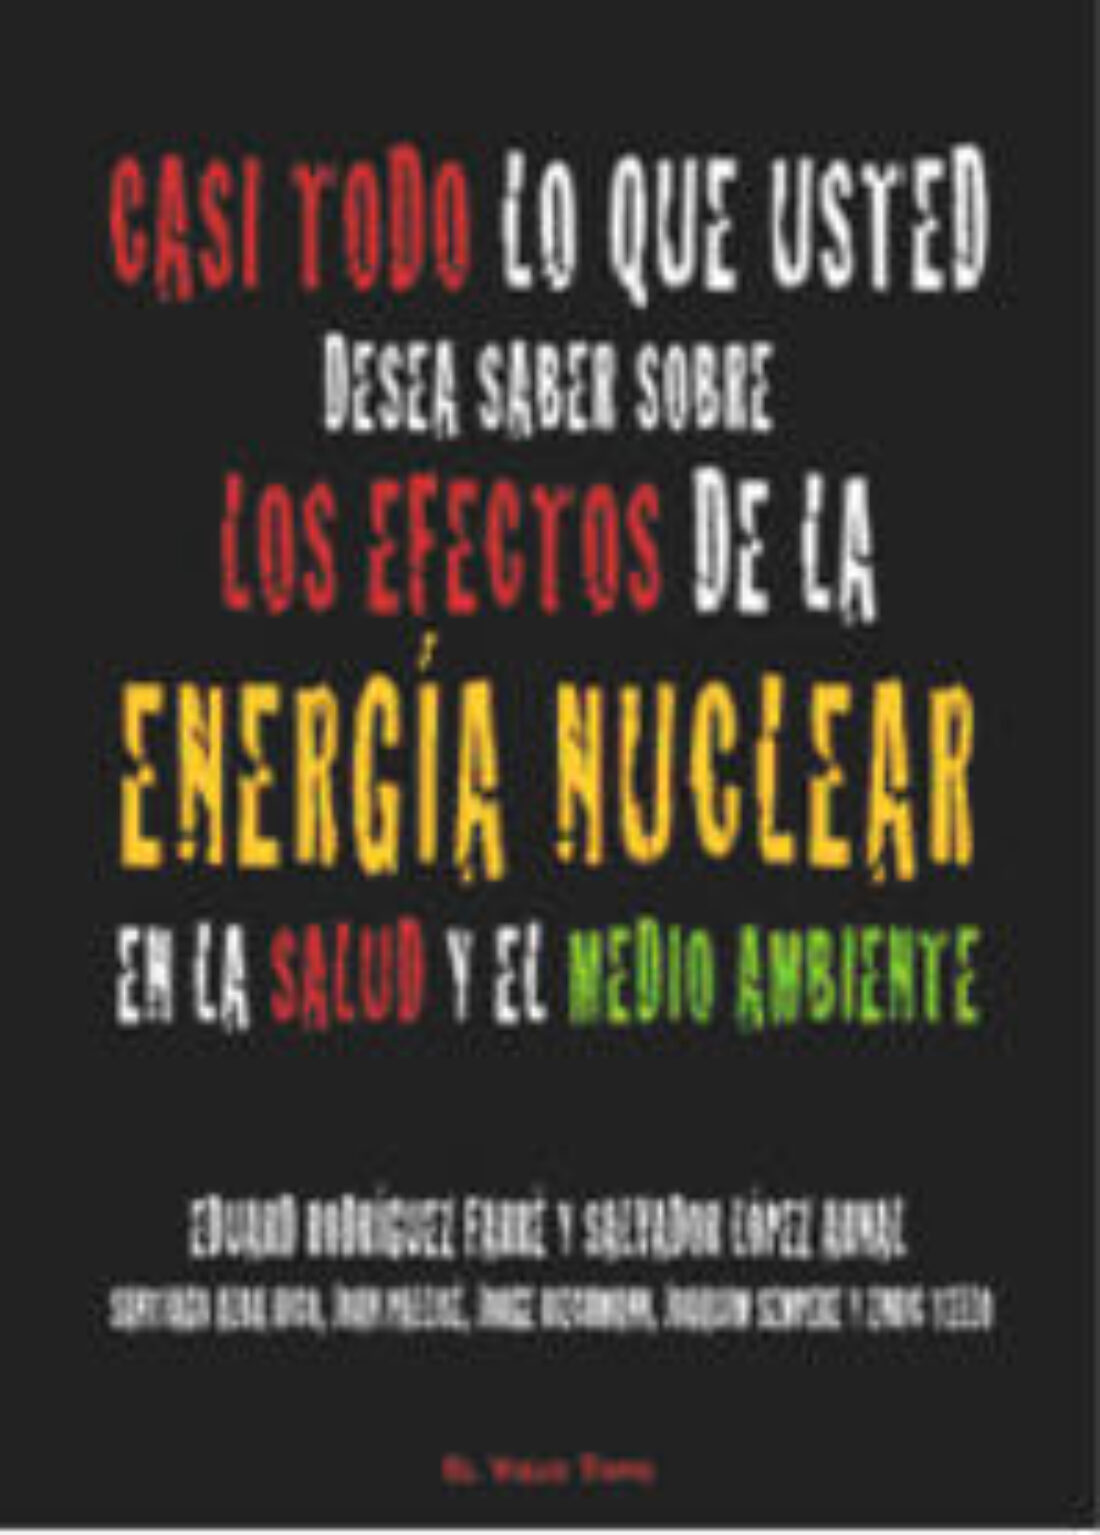 Presentación del libro «Casi todo lo que usted desea saber sobre los efectos de la energía nuclear en la salud y el medio ambiente»